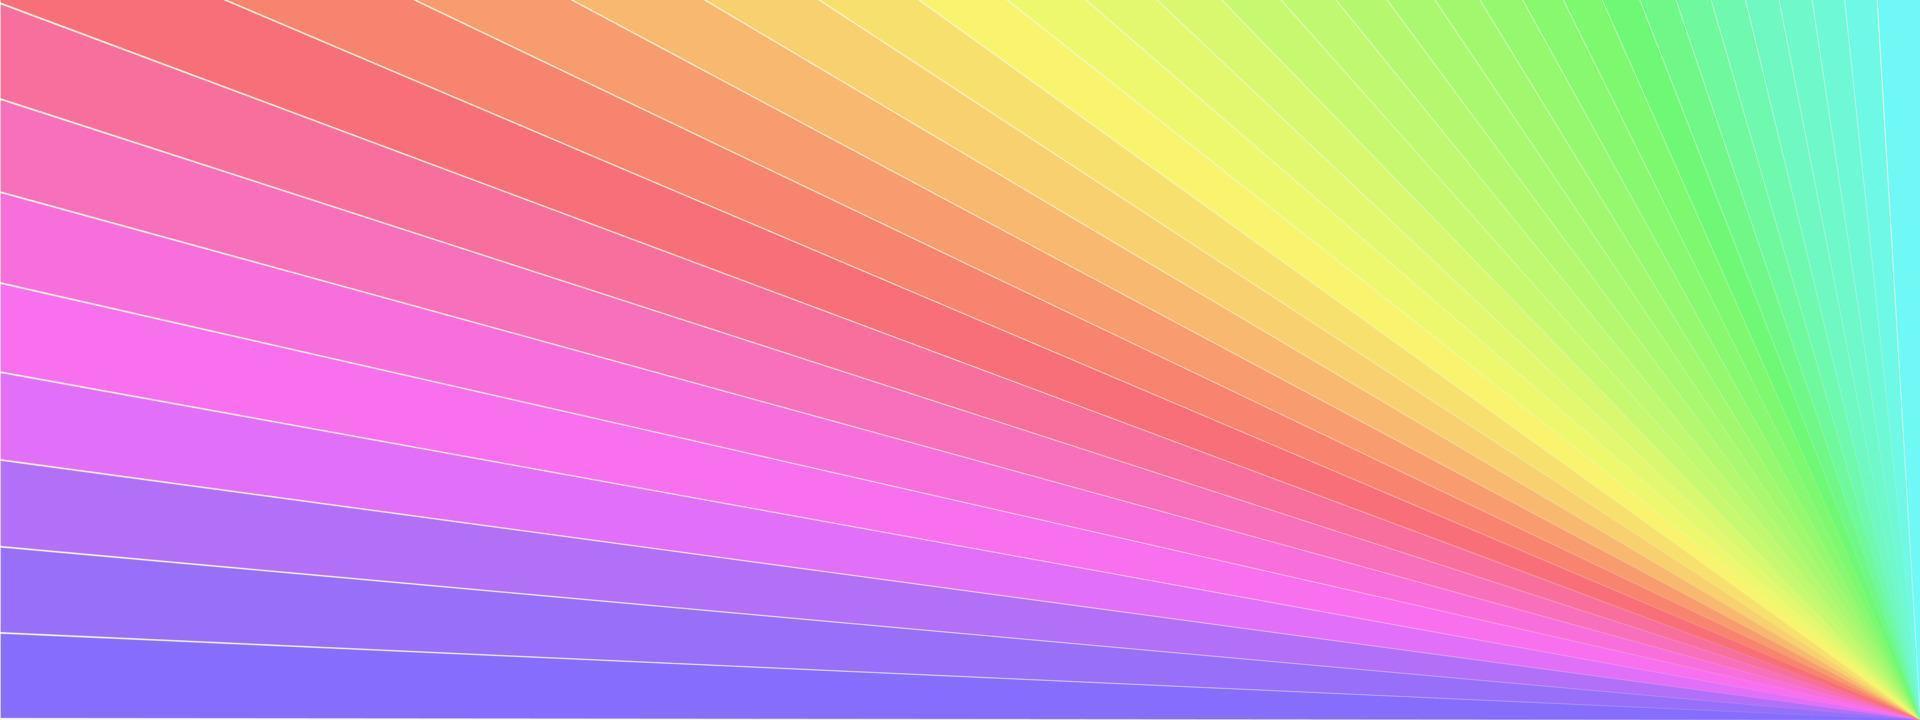 fondo abstracto rayos brillante festival arco iris raya vector ilustración